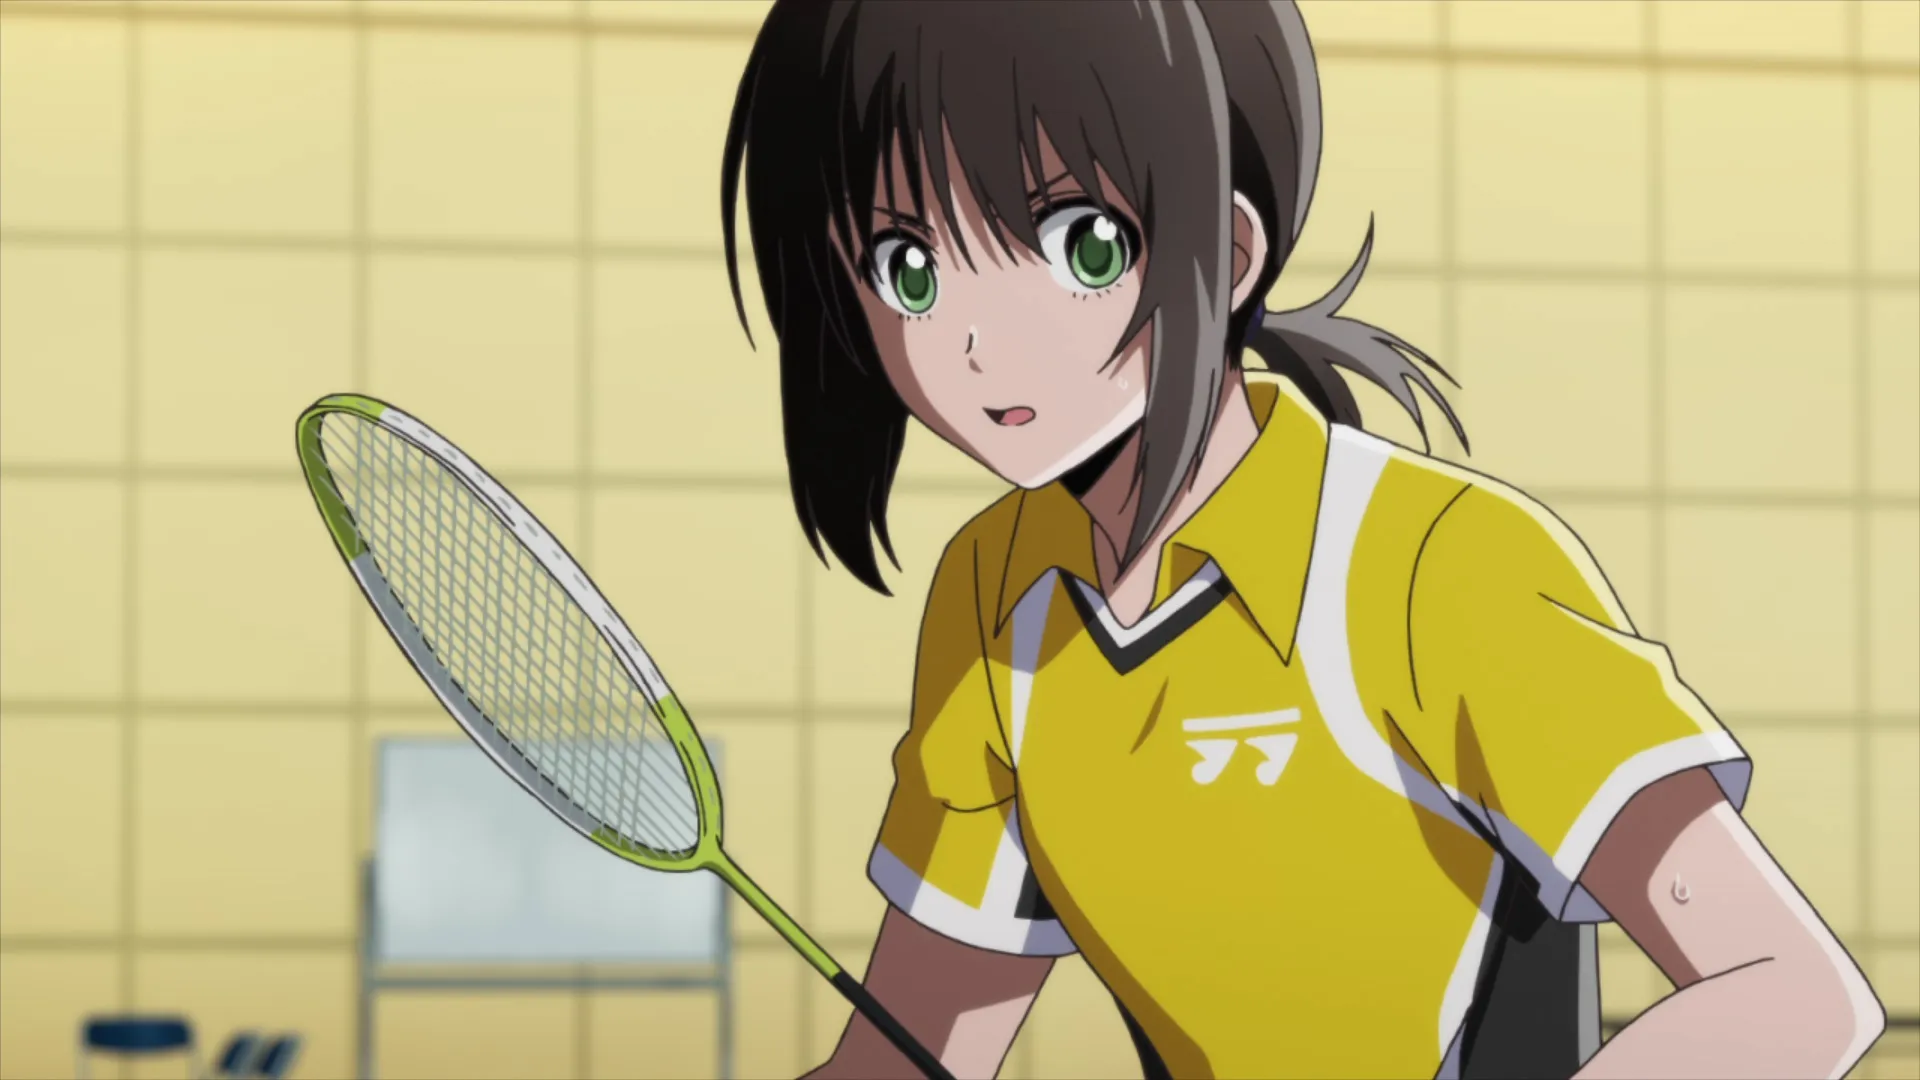 personagem-feminino-de-hanebado-usando-uma-blusa-amarela-e-segurando-uma-raquete-de-badminton